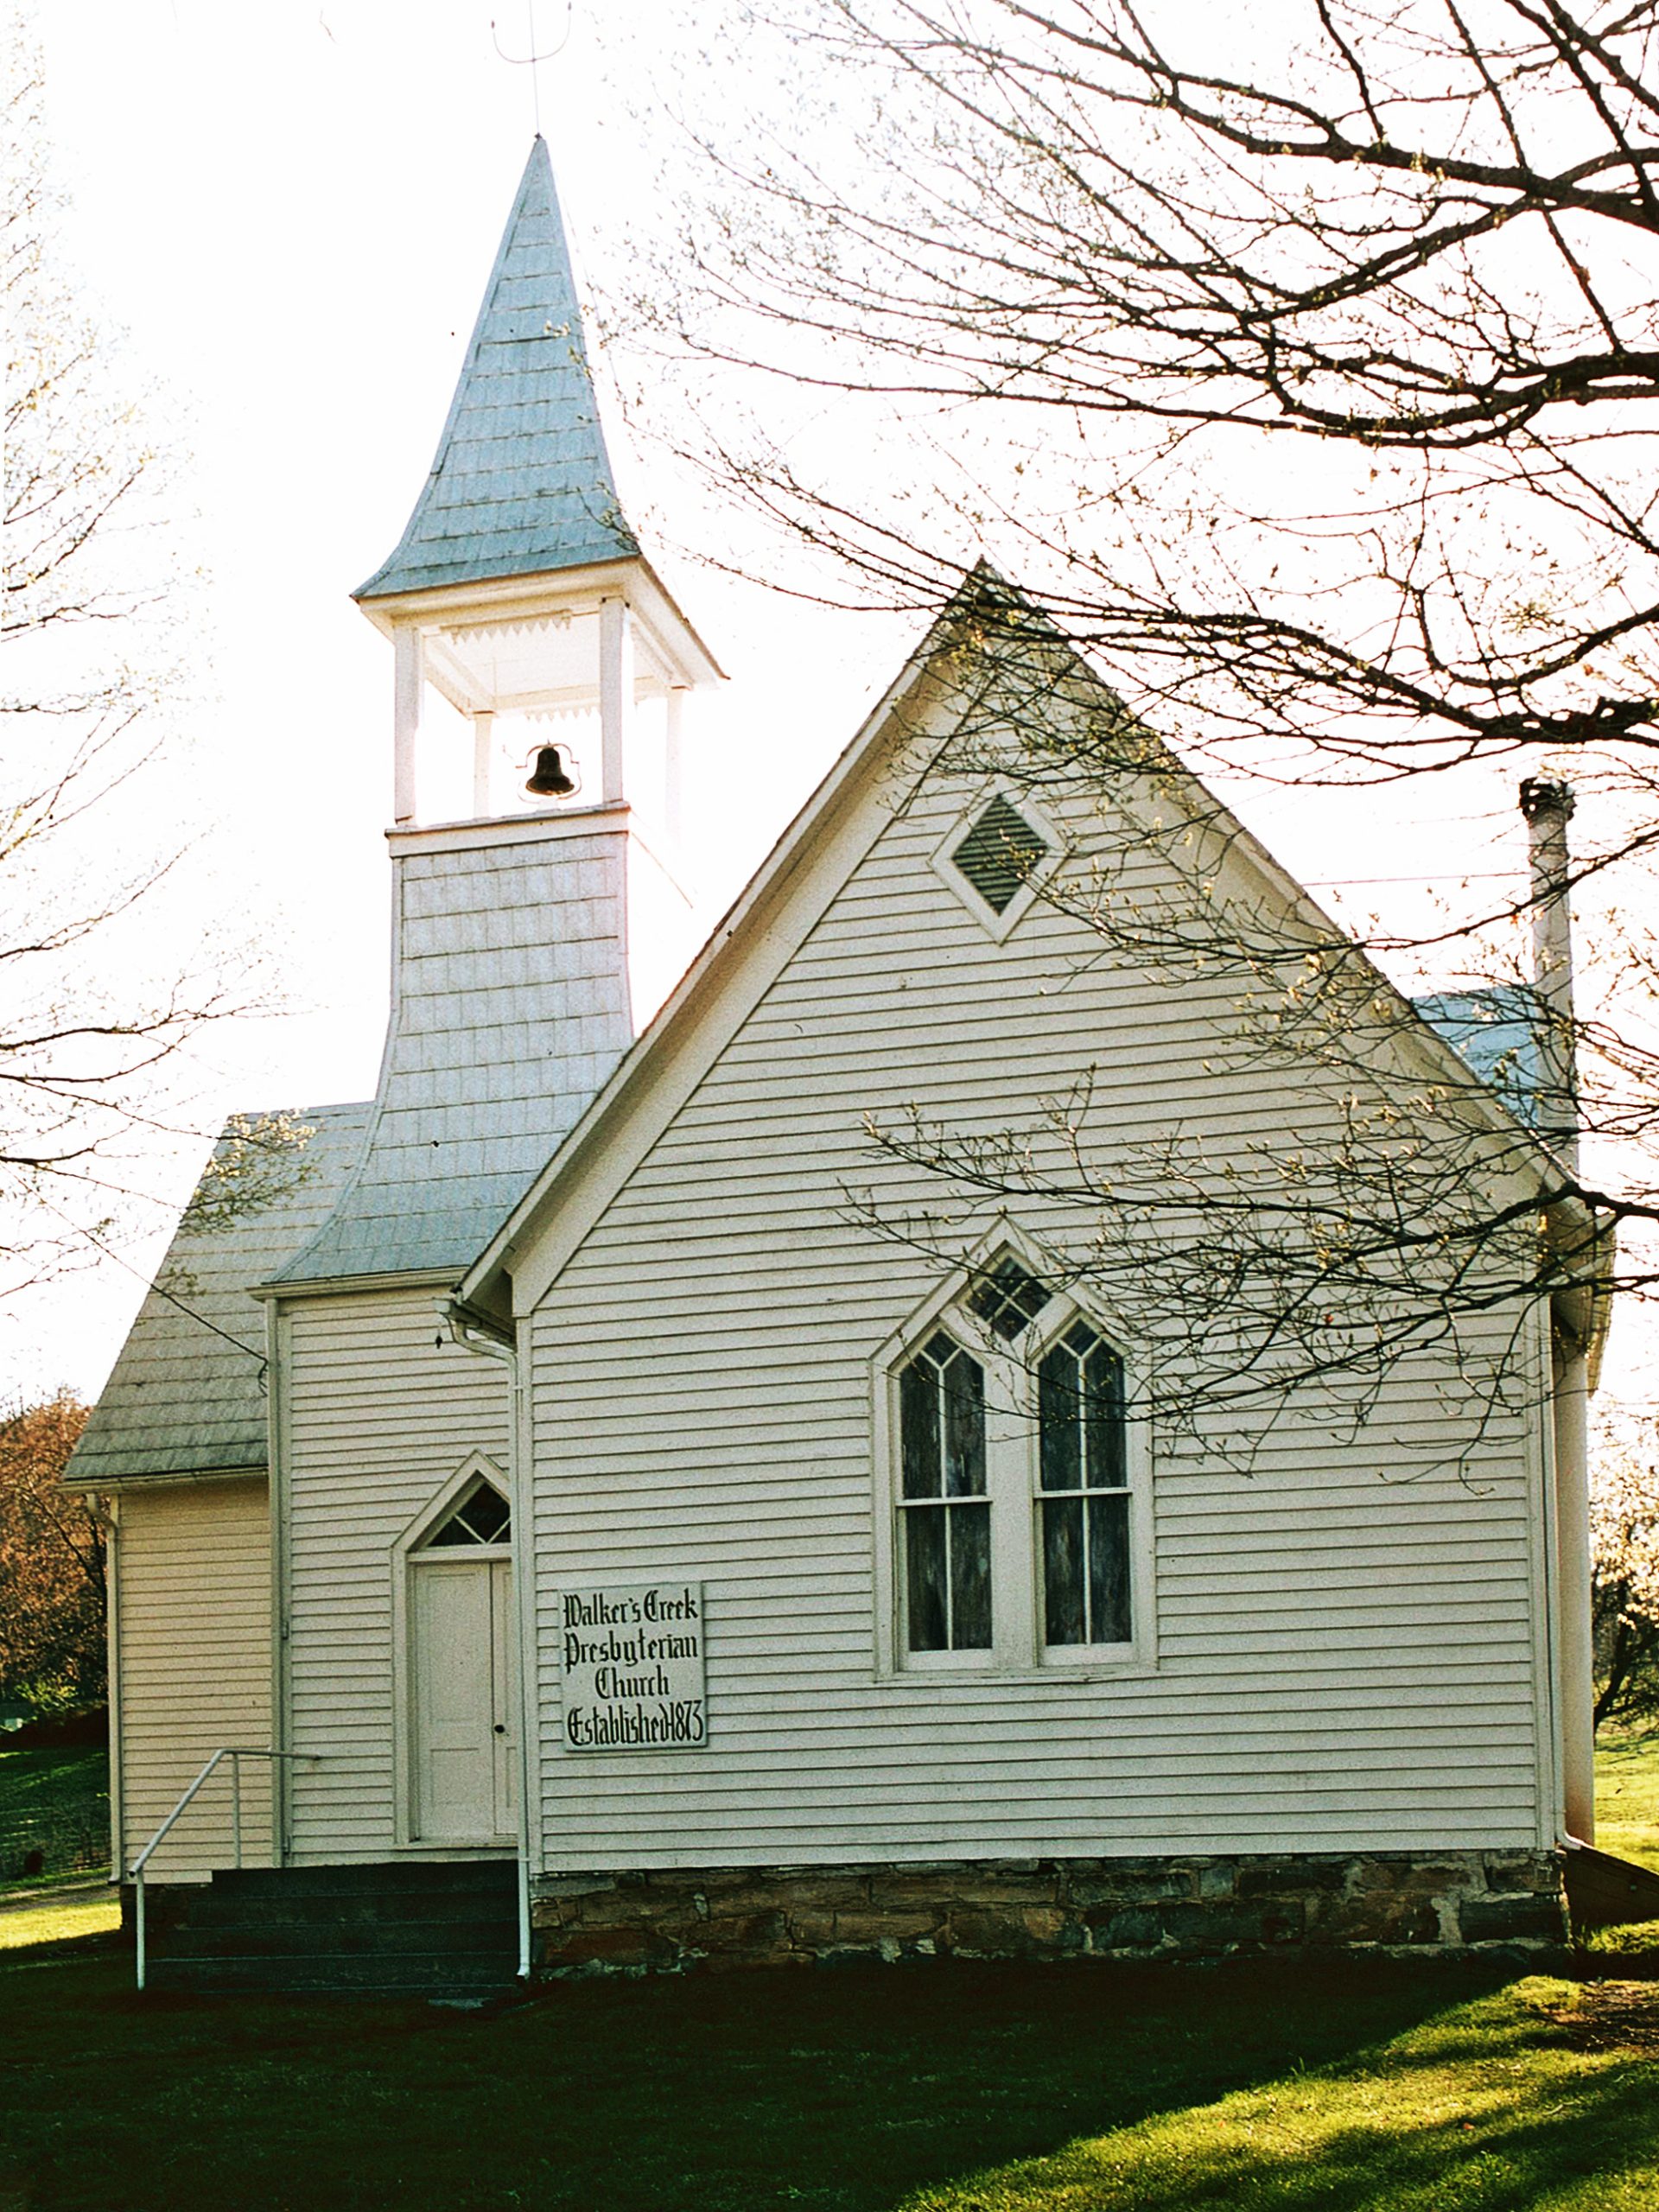 Walker’s Creek Presbyterian Church